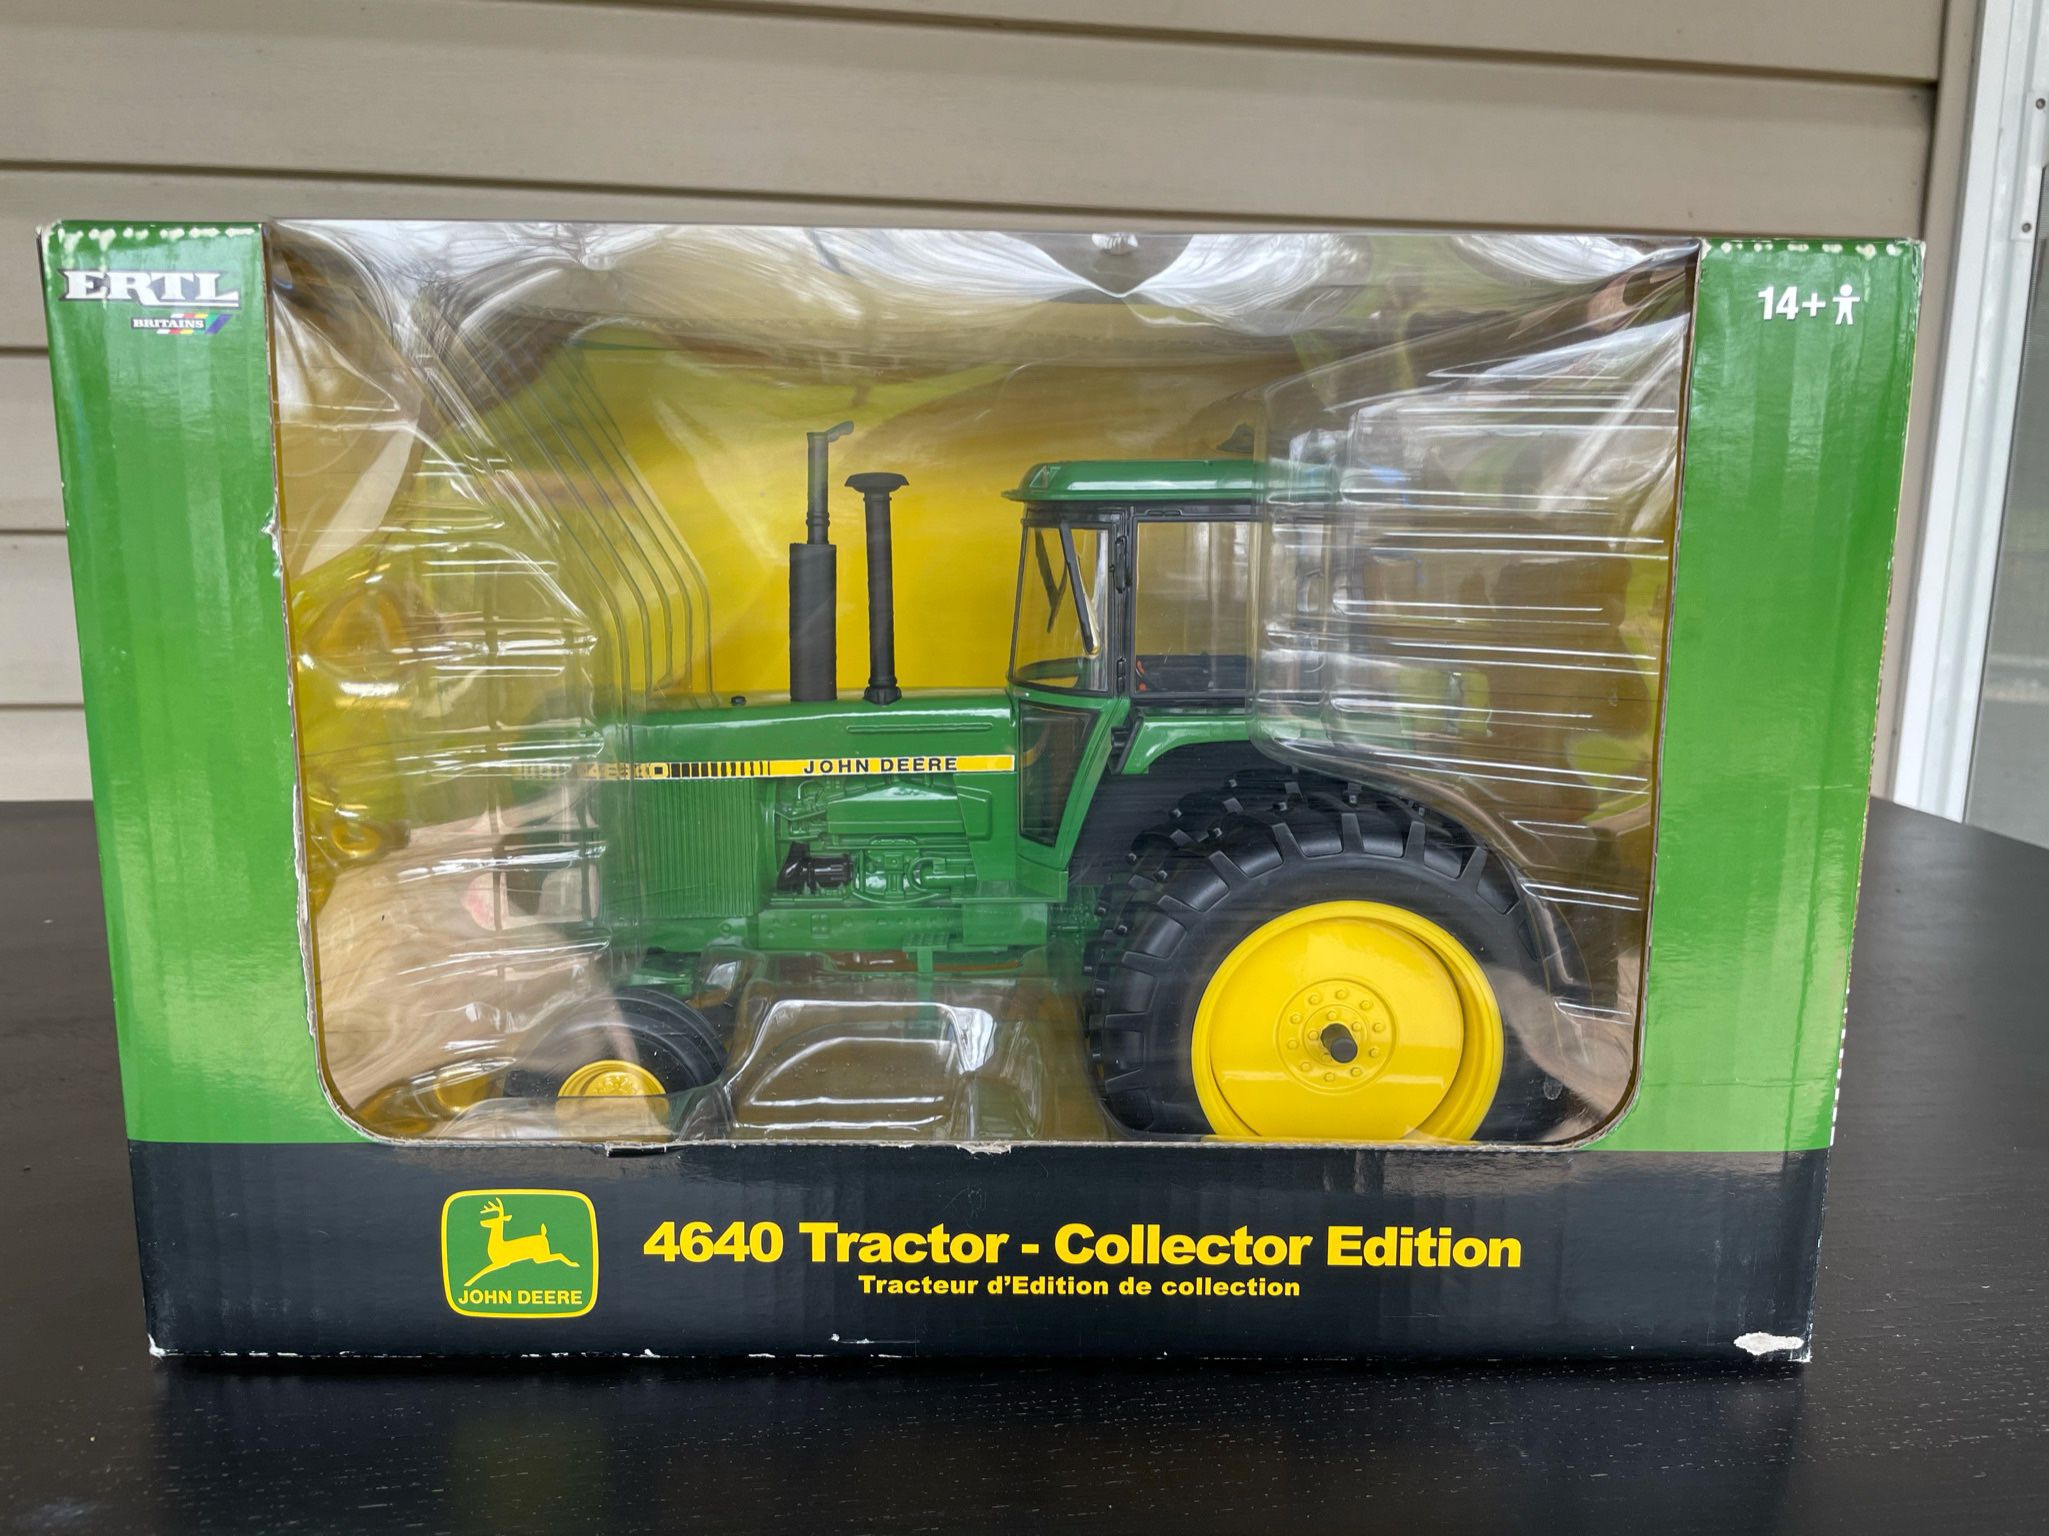 John Deere Tractor Model (new)